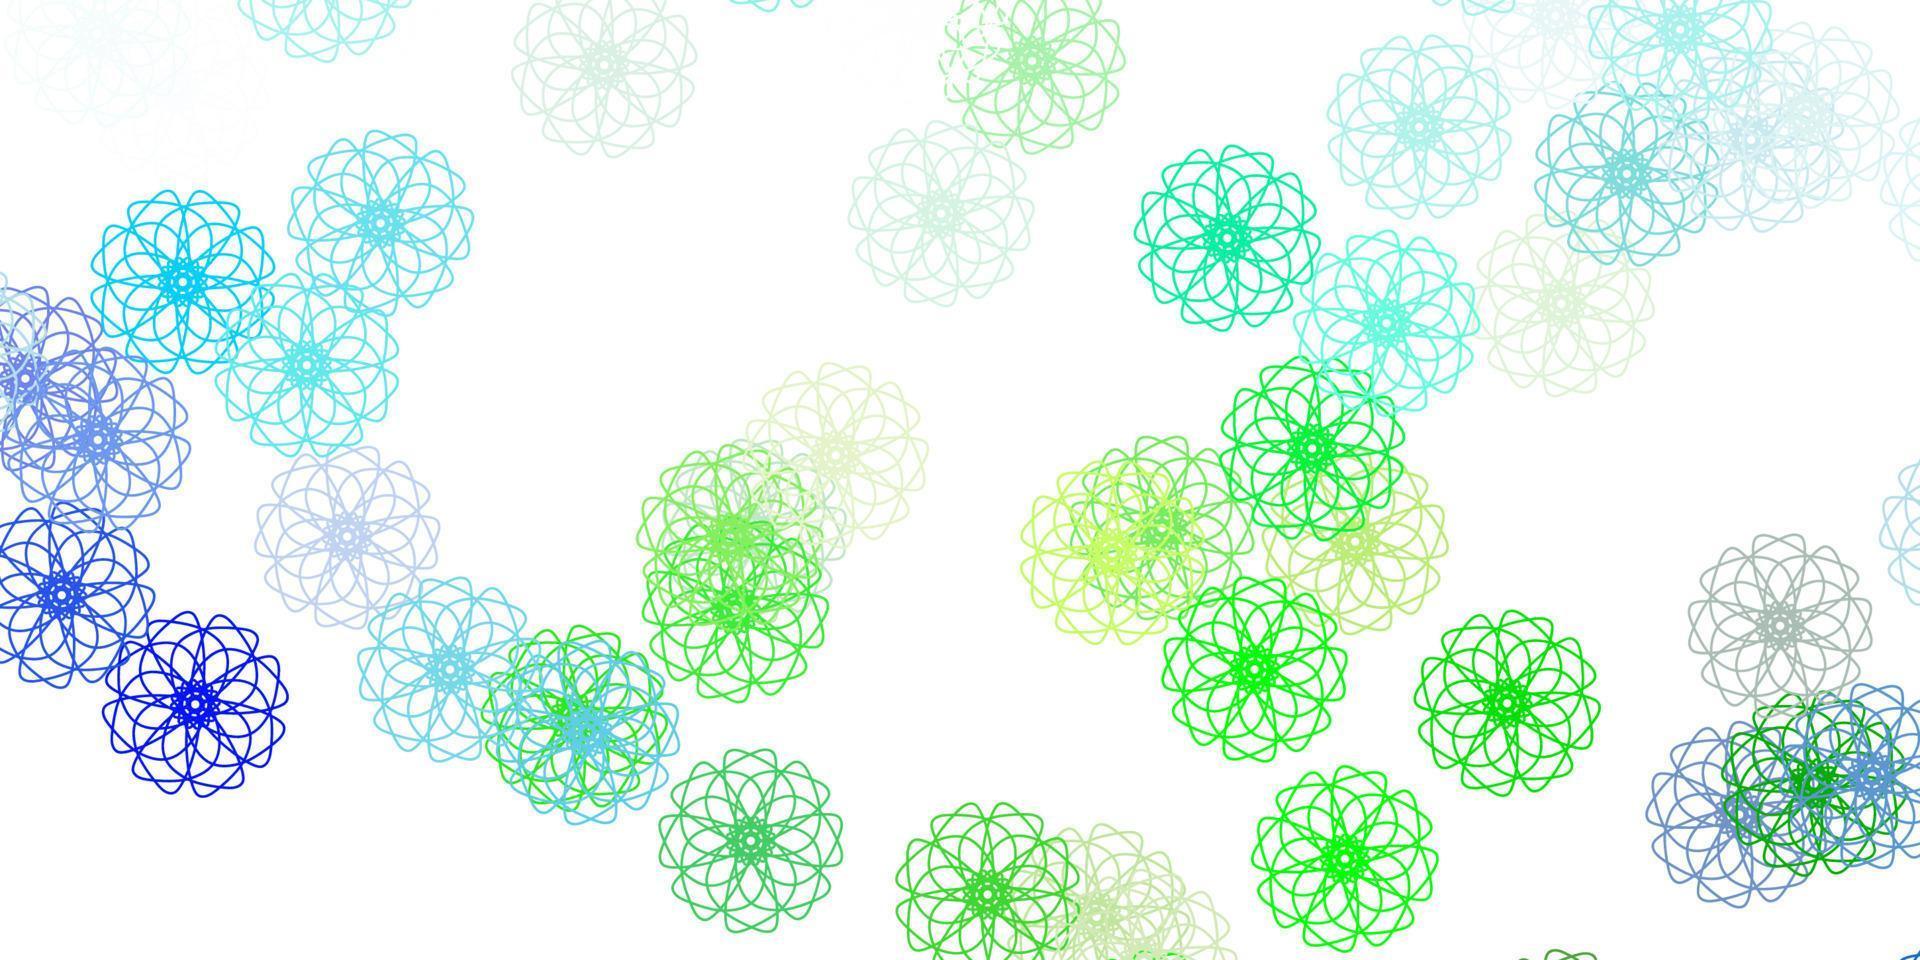 struttura di doodle di vettore blu chiaro, verde con fiori.